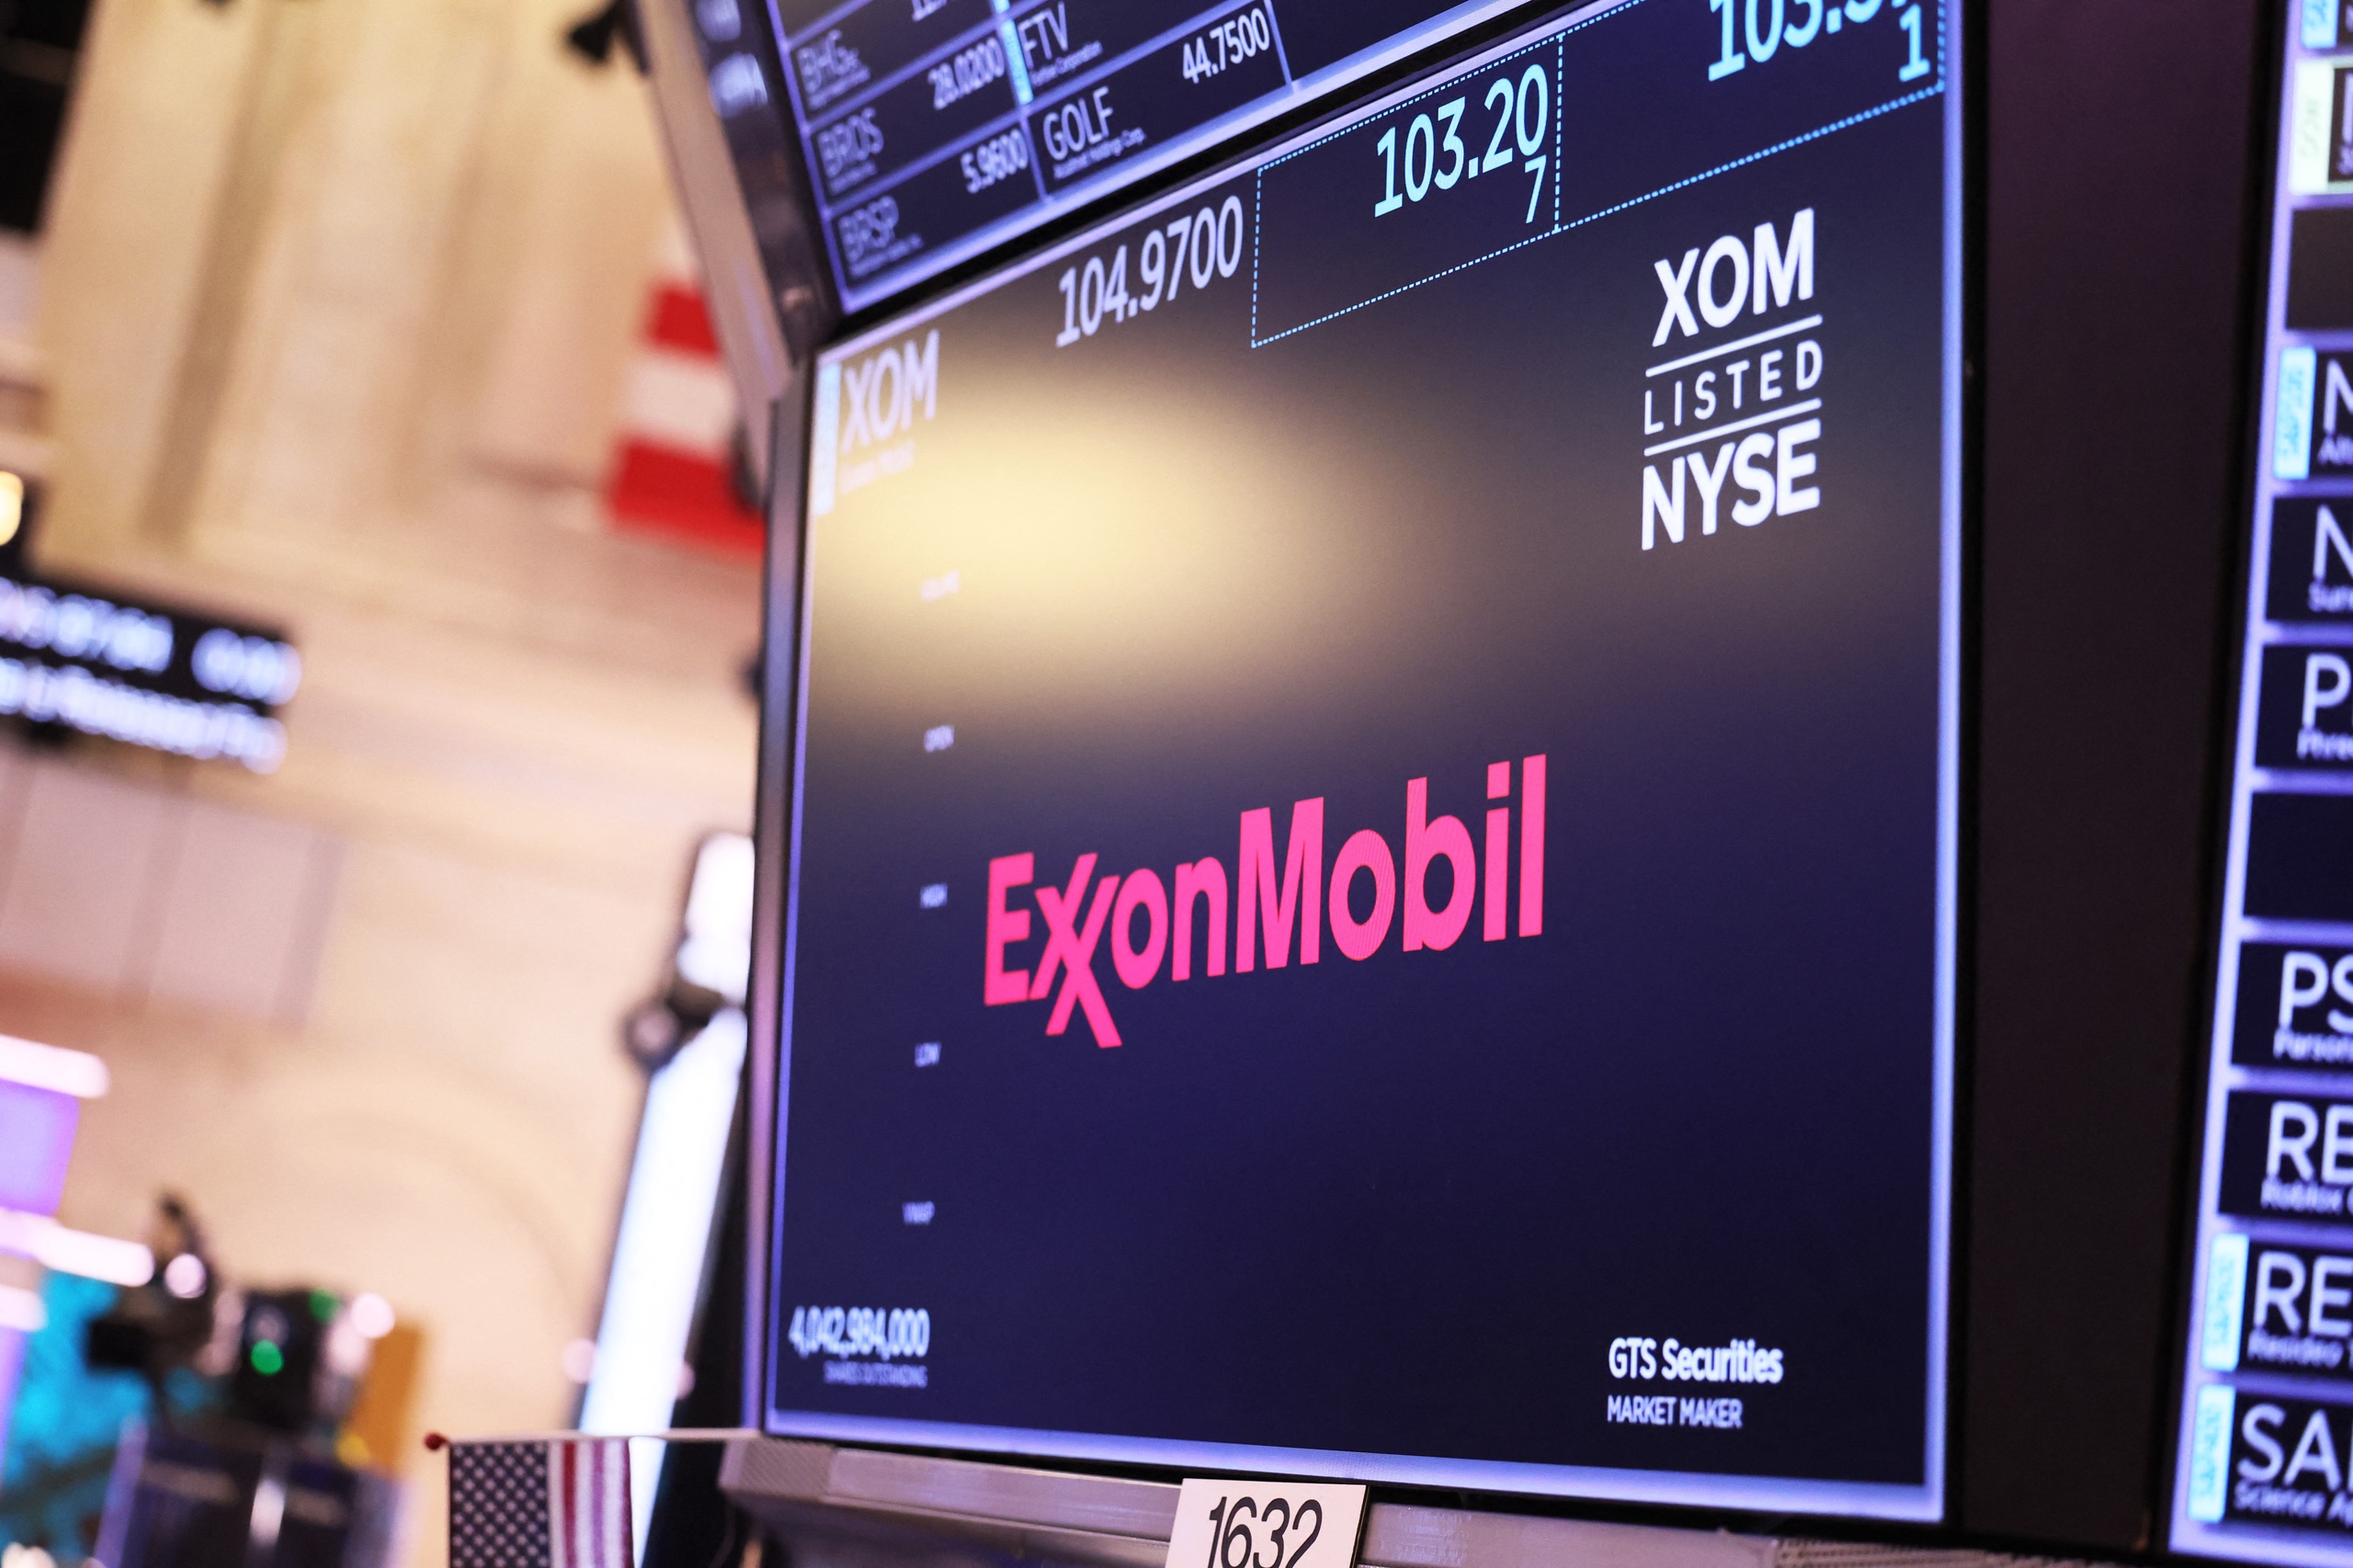 Aandeelhouders van ExxonMobil hebben met een grote meerderheid voorstellen afgewezen om het Amerikaanse olieconcern te dwingen meer te doen aan de klimaataanpak. Geen van de initiatiefvoorstellen, ingediend door het activistische beleggerscollectief Follow This, kreeg meer dan 36 procent van de stemmen.